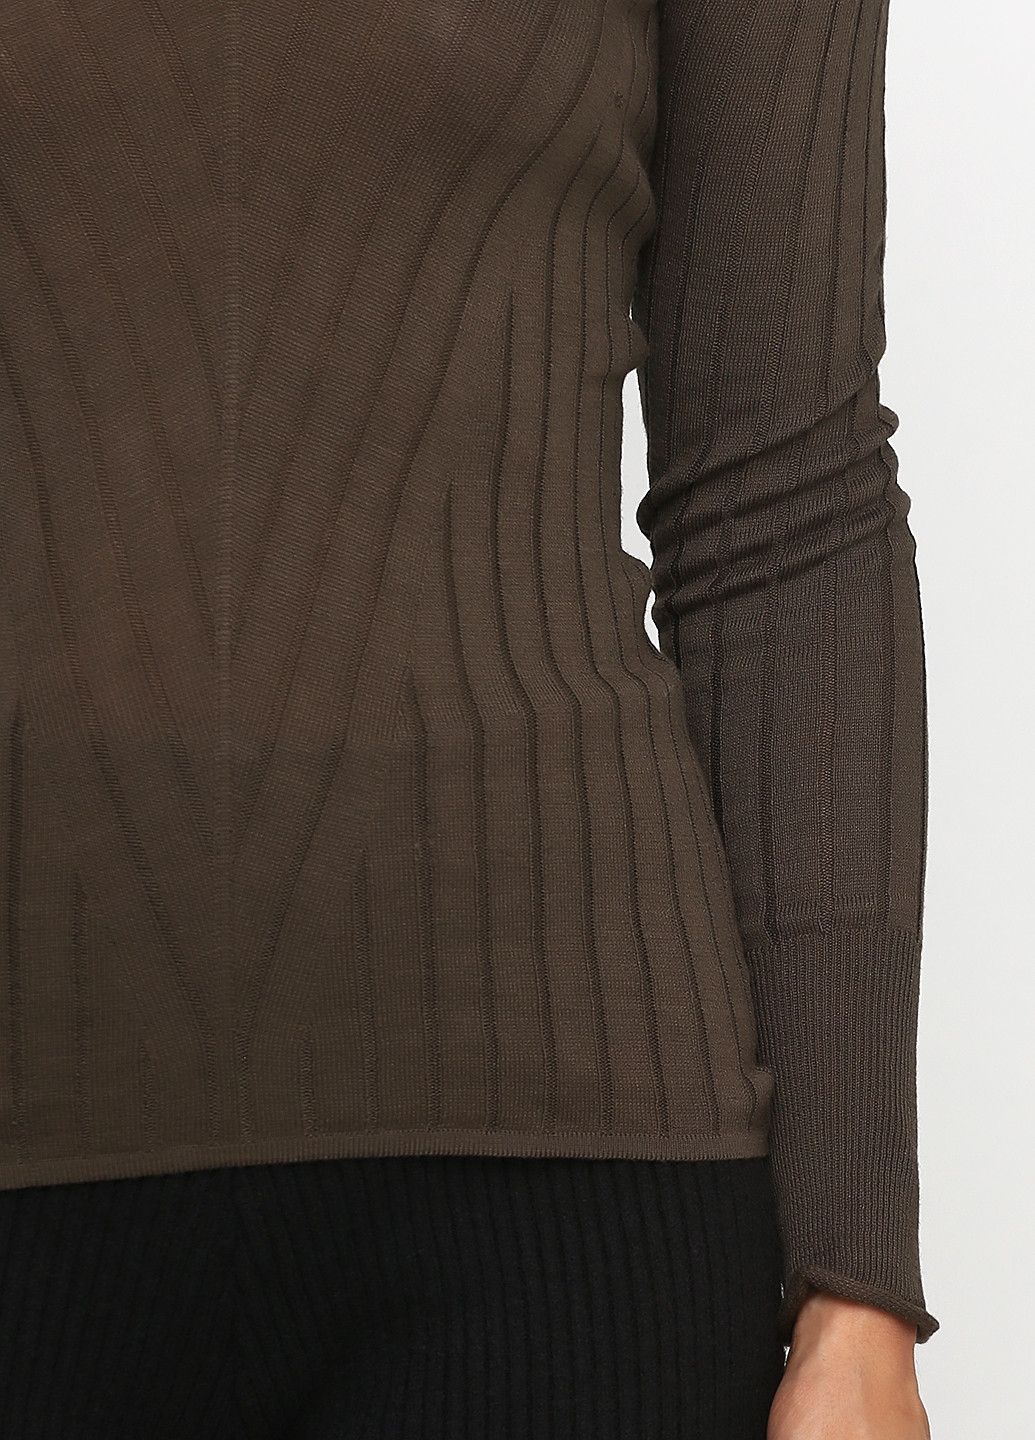 Оливковый (хаки) демисезонный пуловер пуловер Sassofono